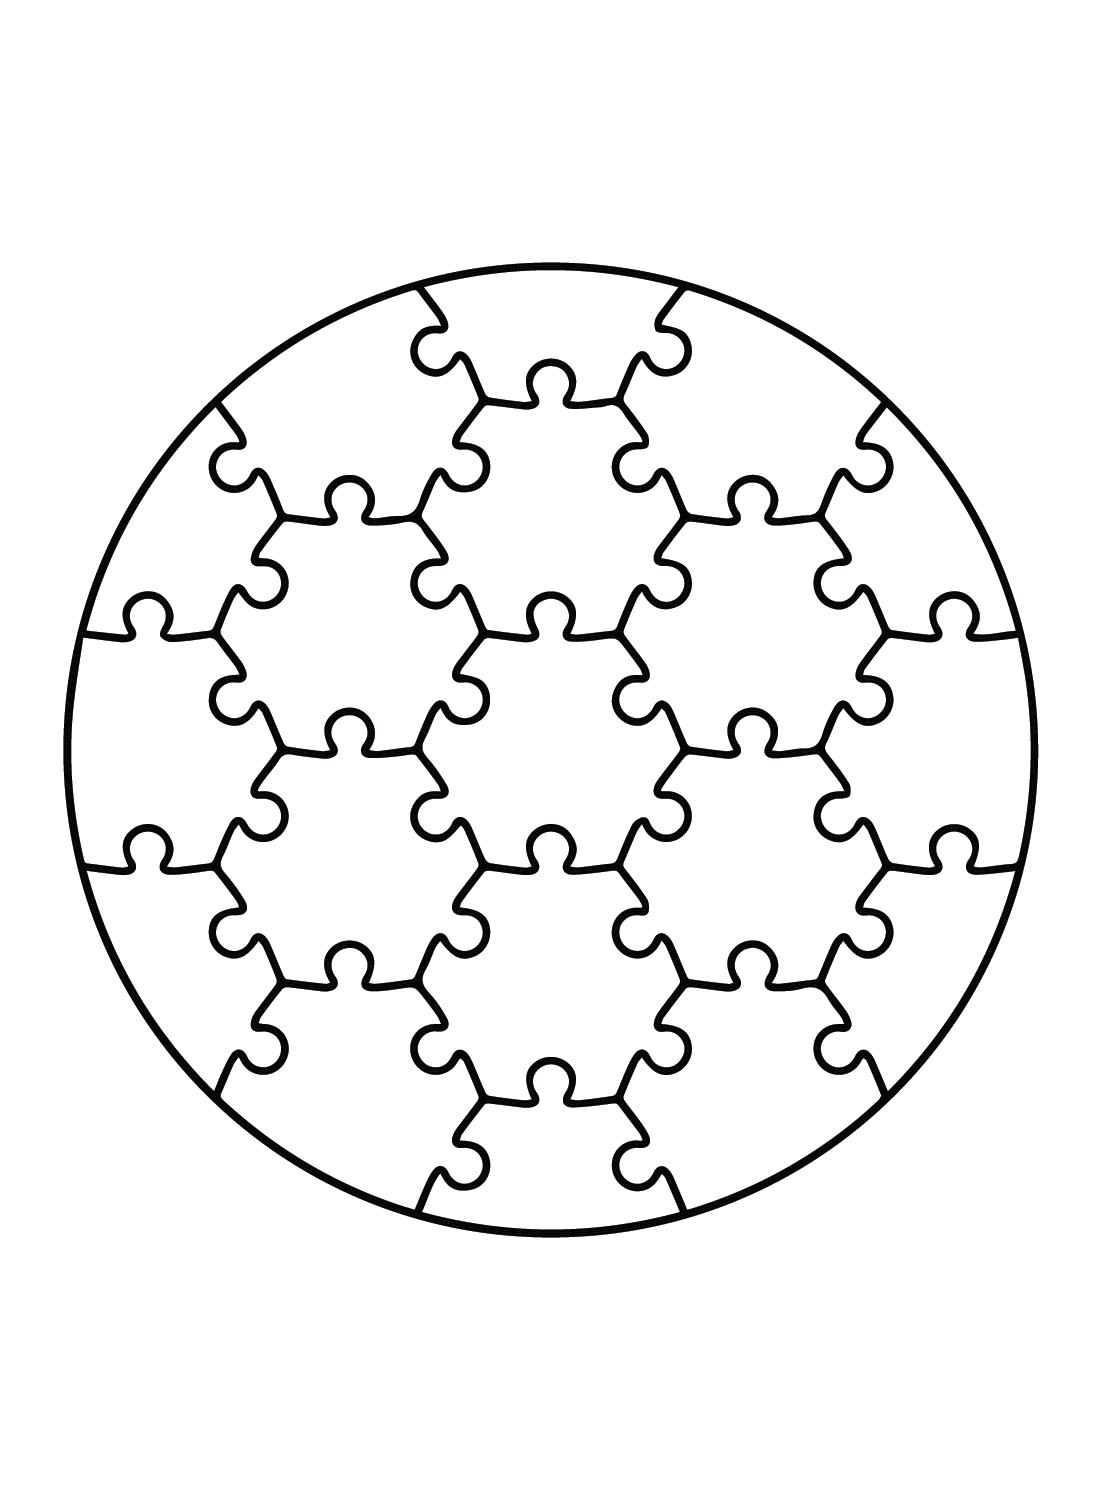 Imagens de quebra-cabeça de quebra-cabeça